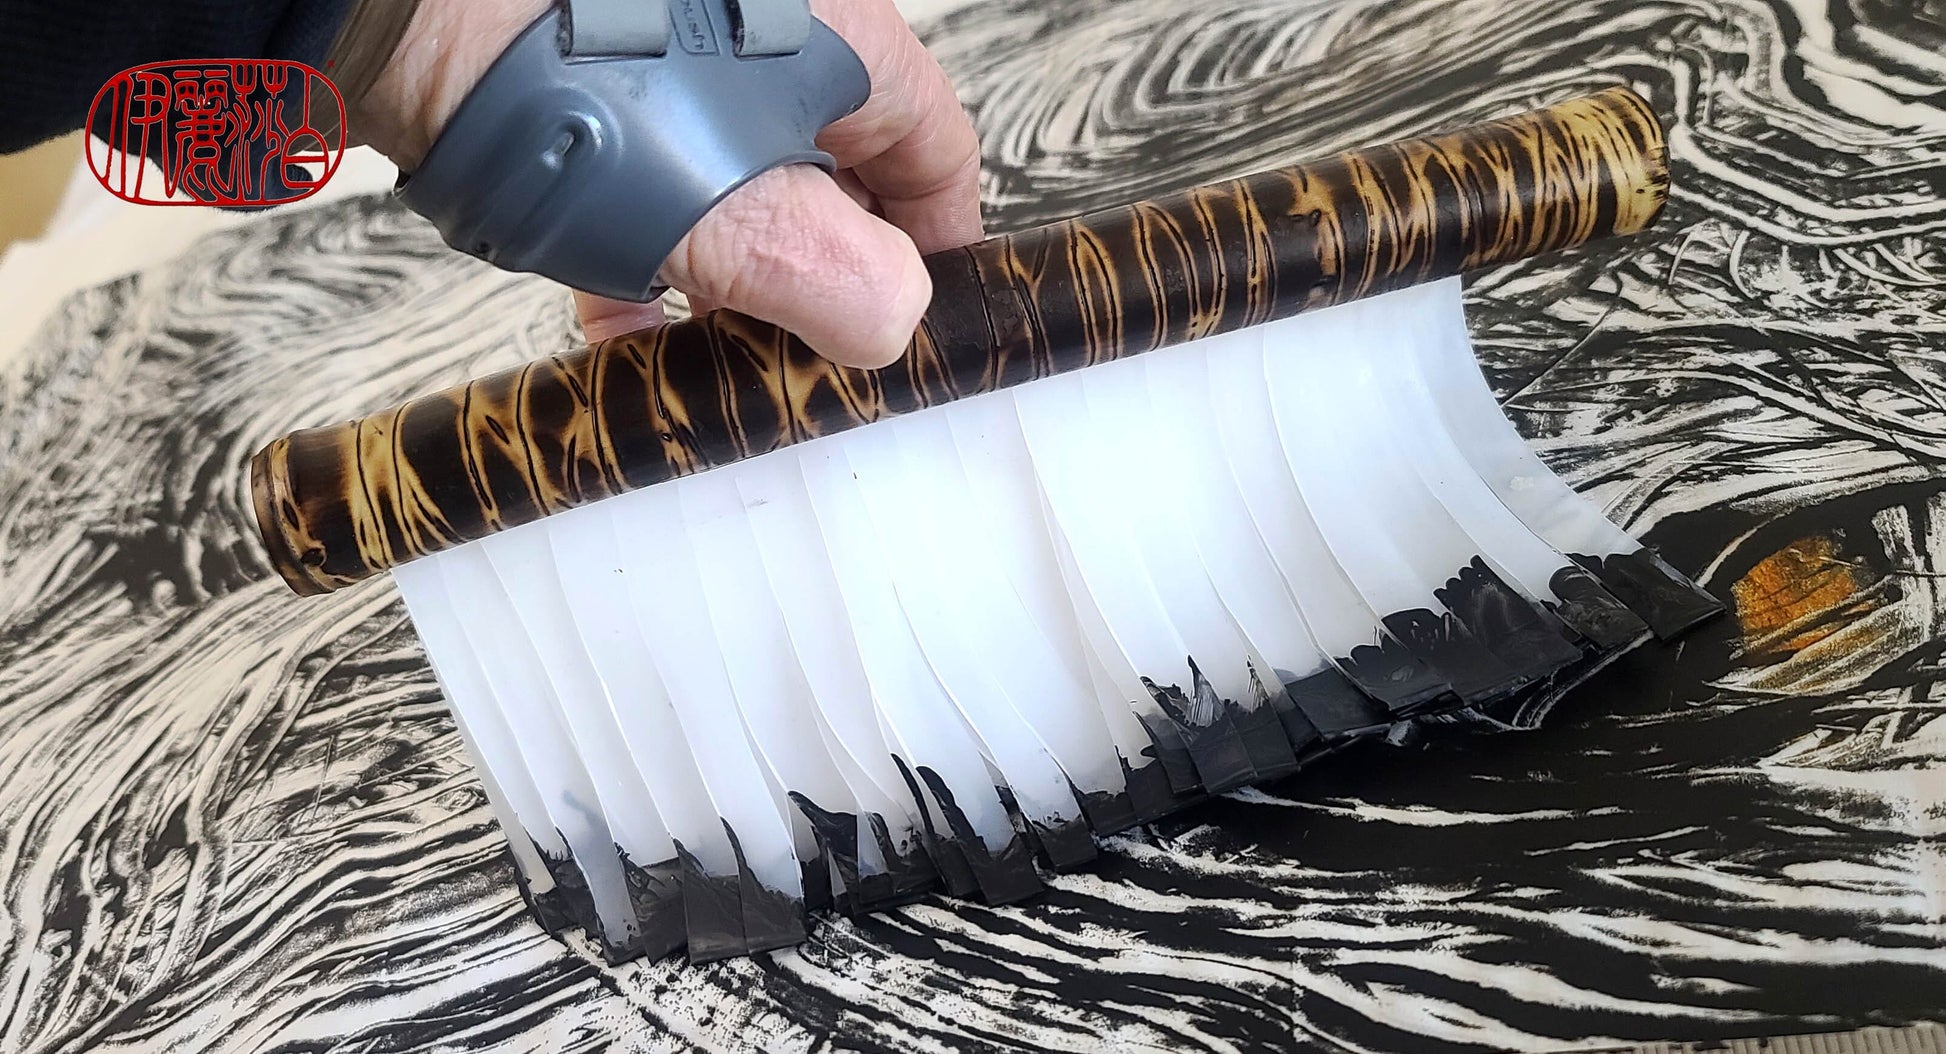 How to Use a Blending Brush – Elizabeth Mott